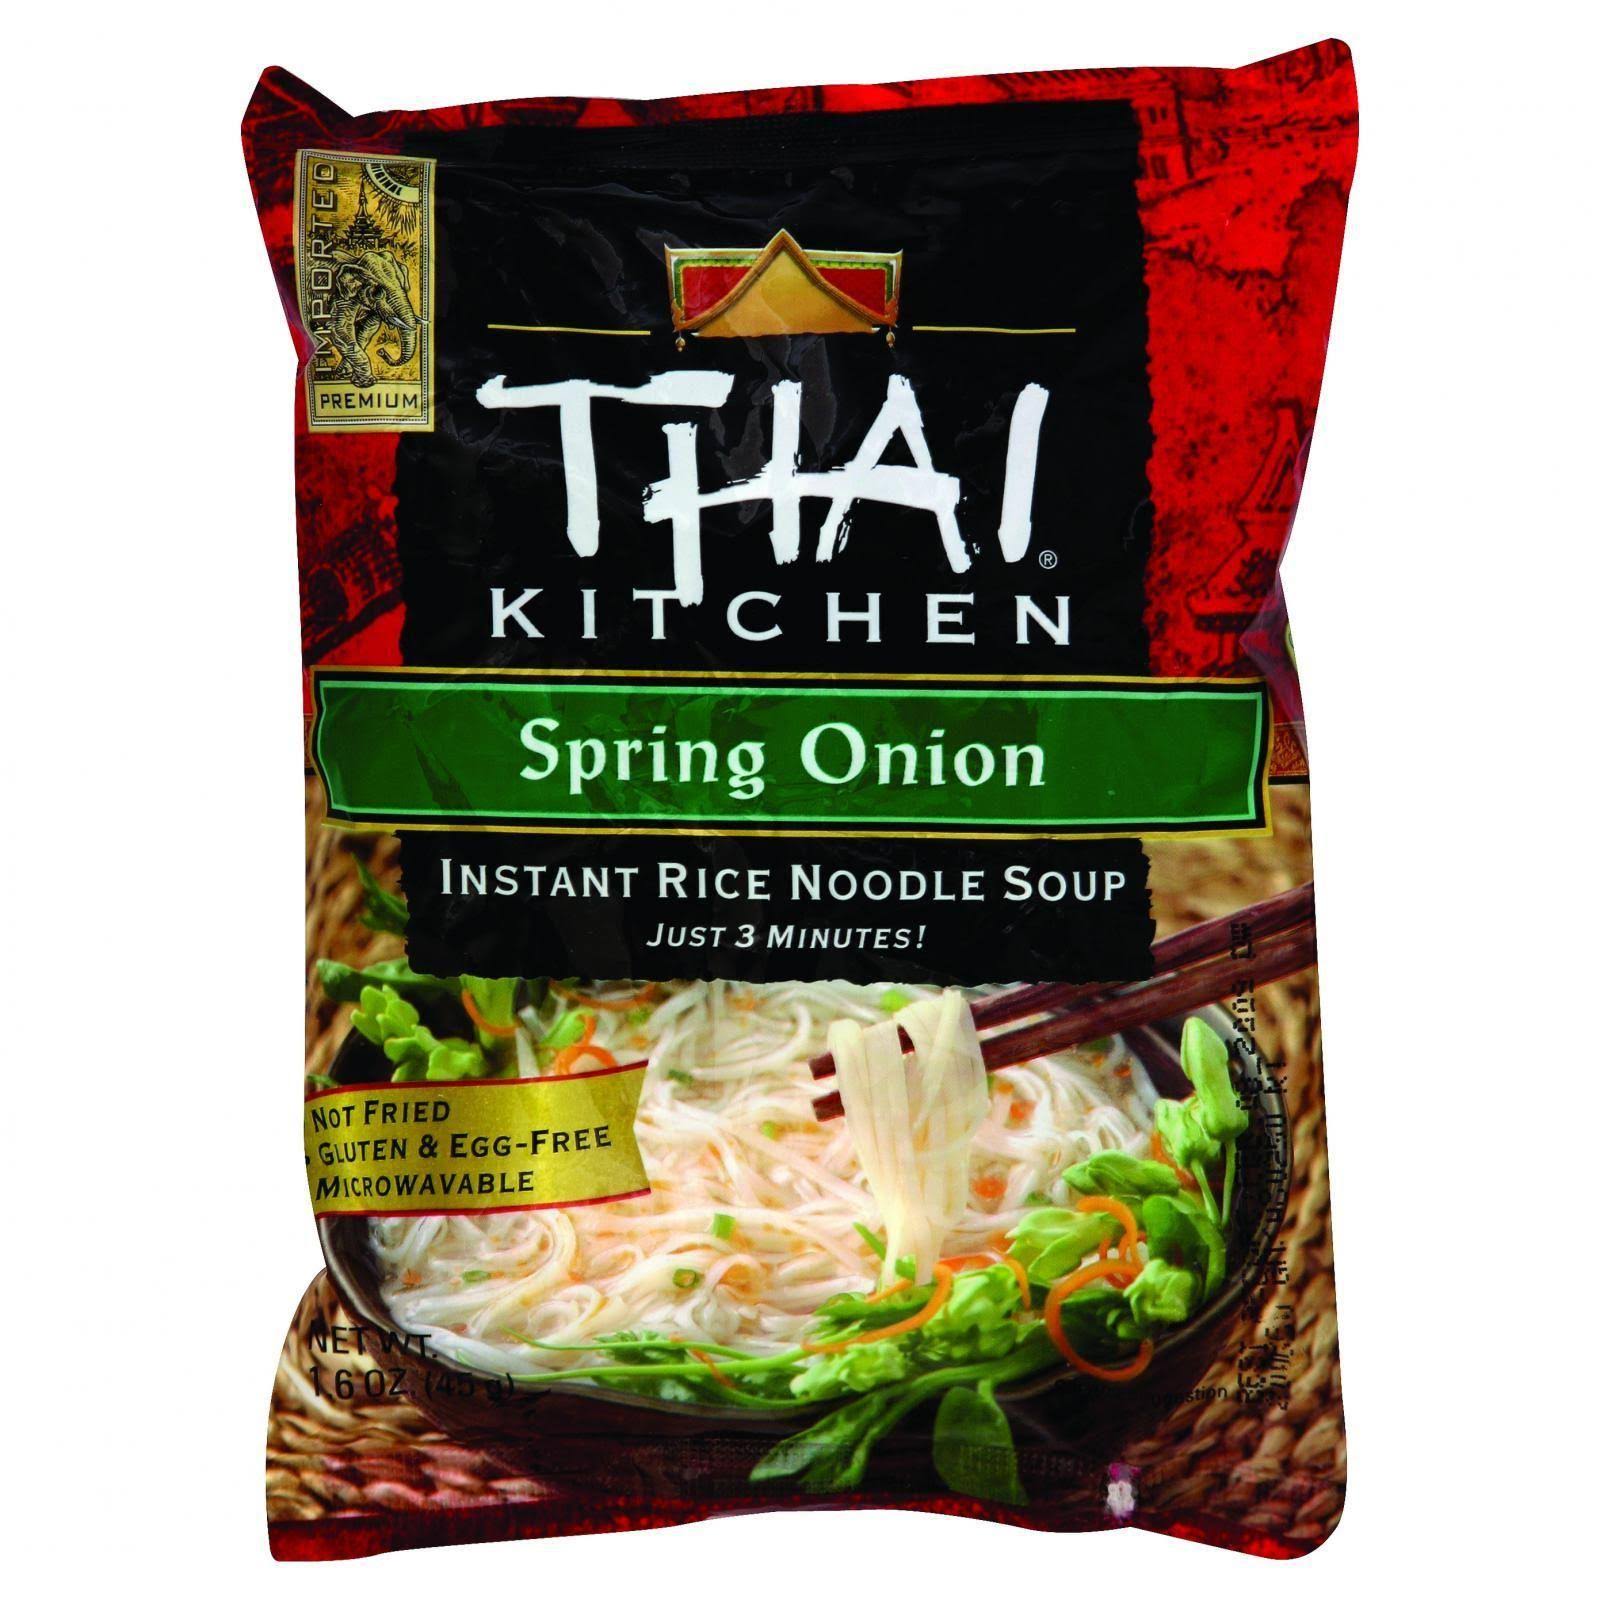 Thai Kitchen Instant Rice Noodle Soup - Spring Onion, 1.6oz